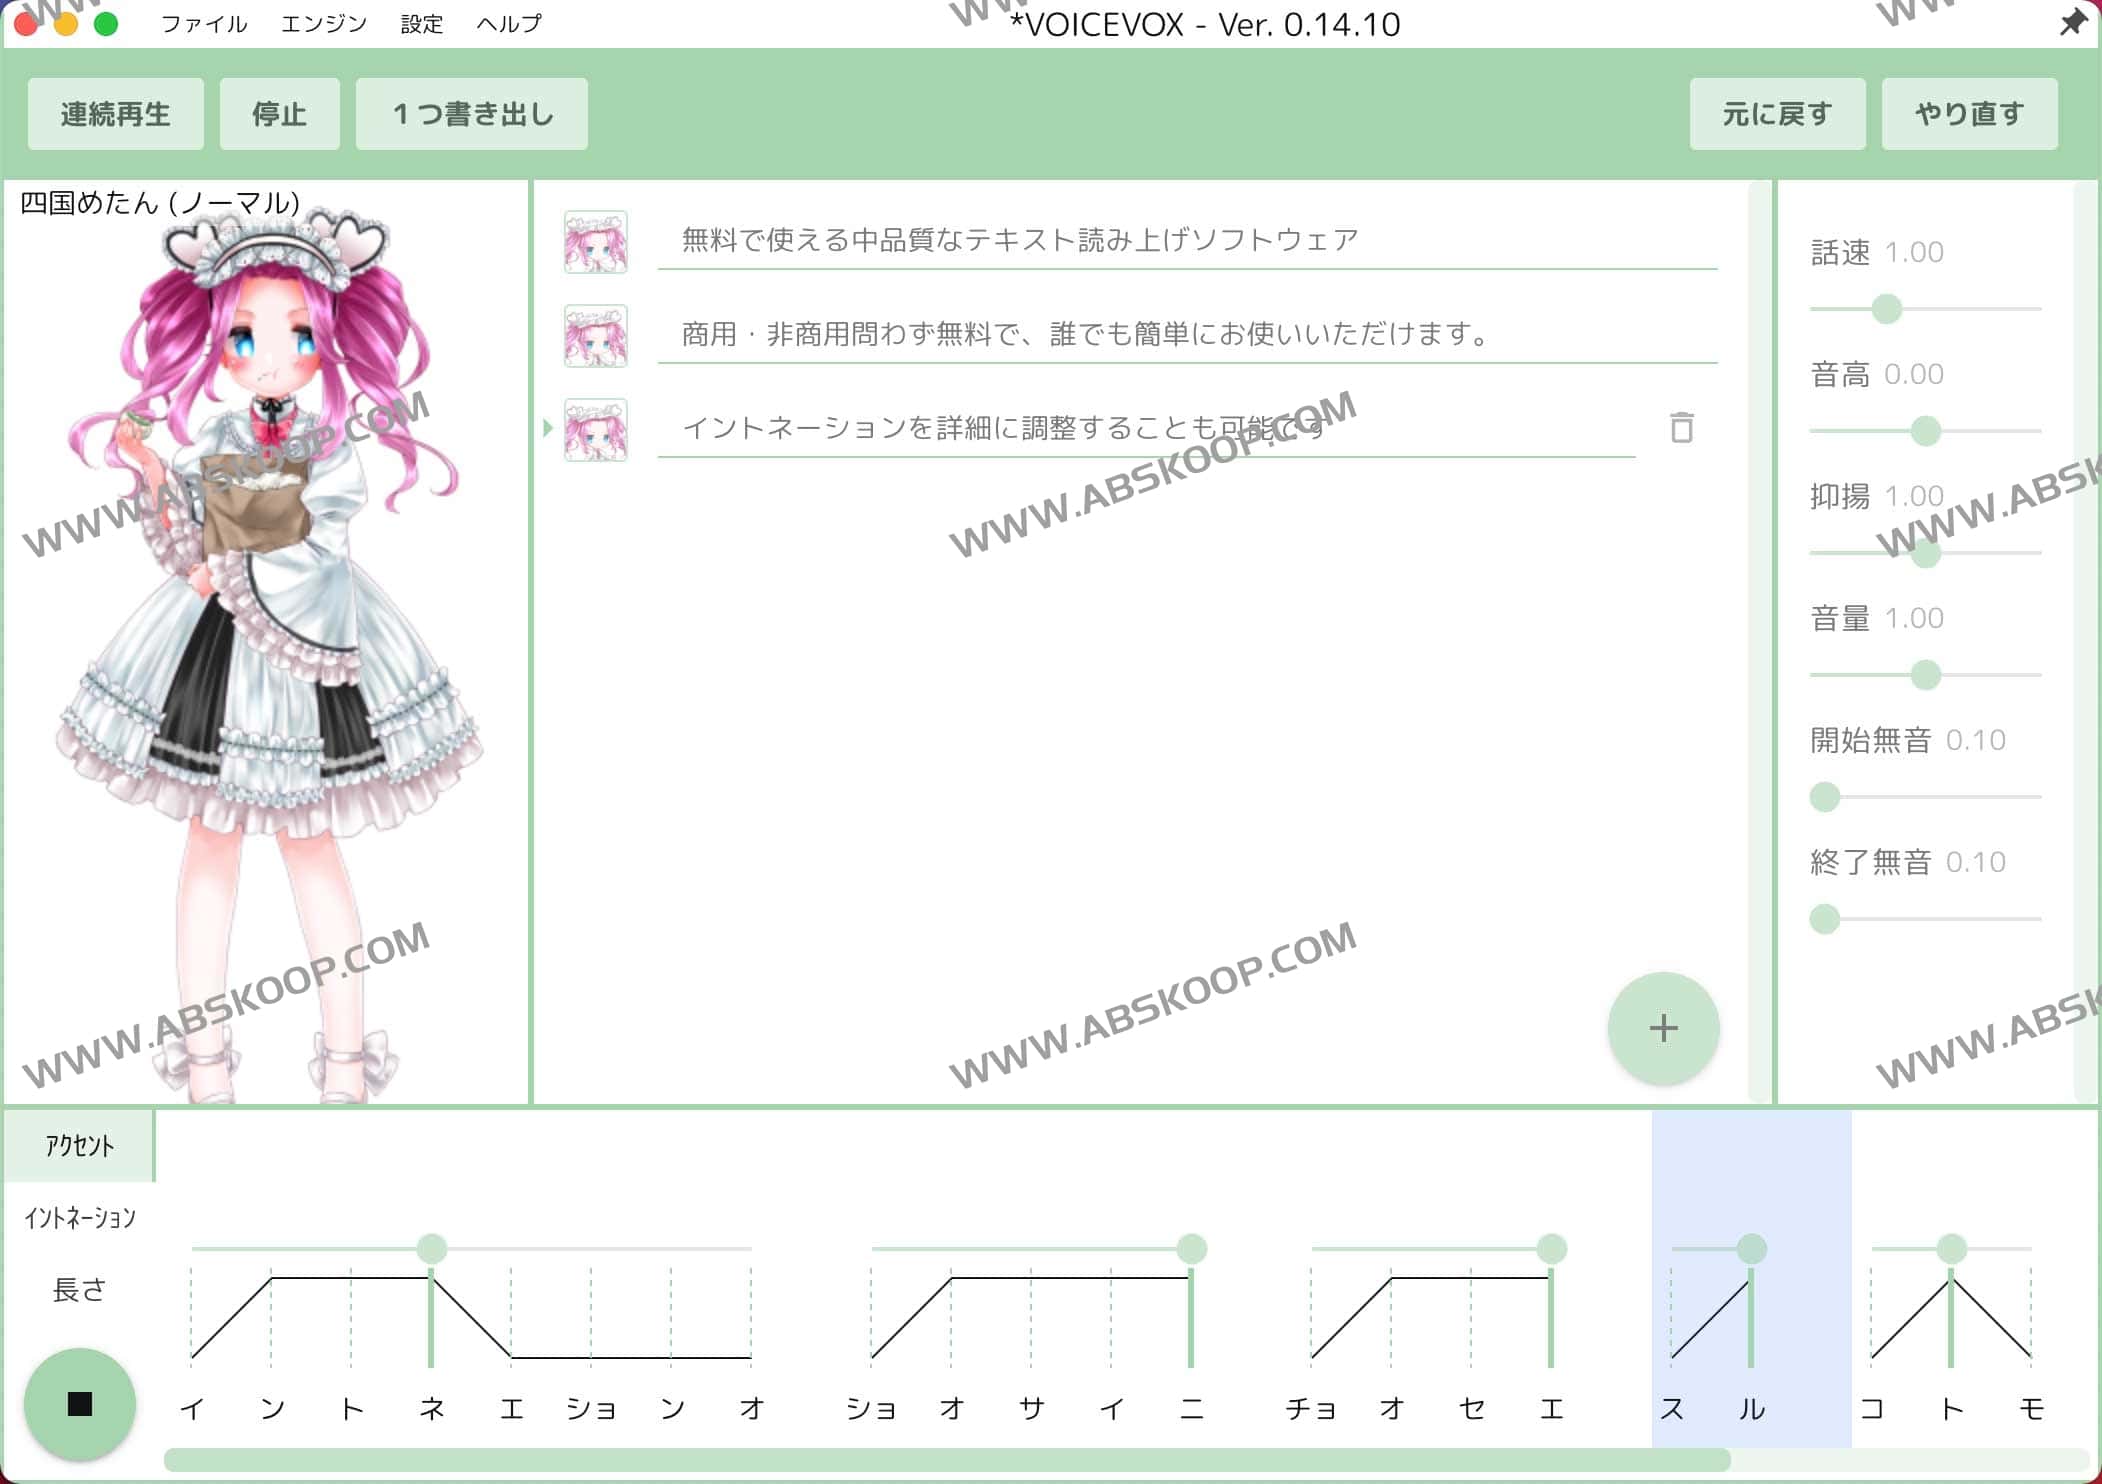 免费开源日语文本转语音软件 可商用-VOICEVOX